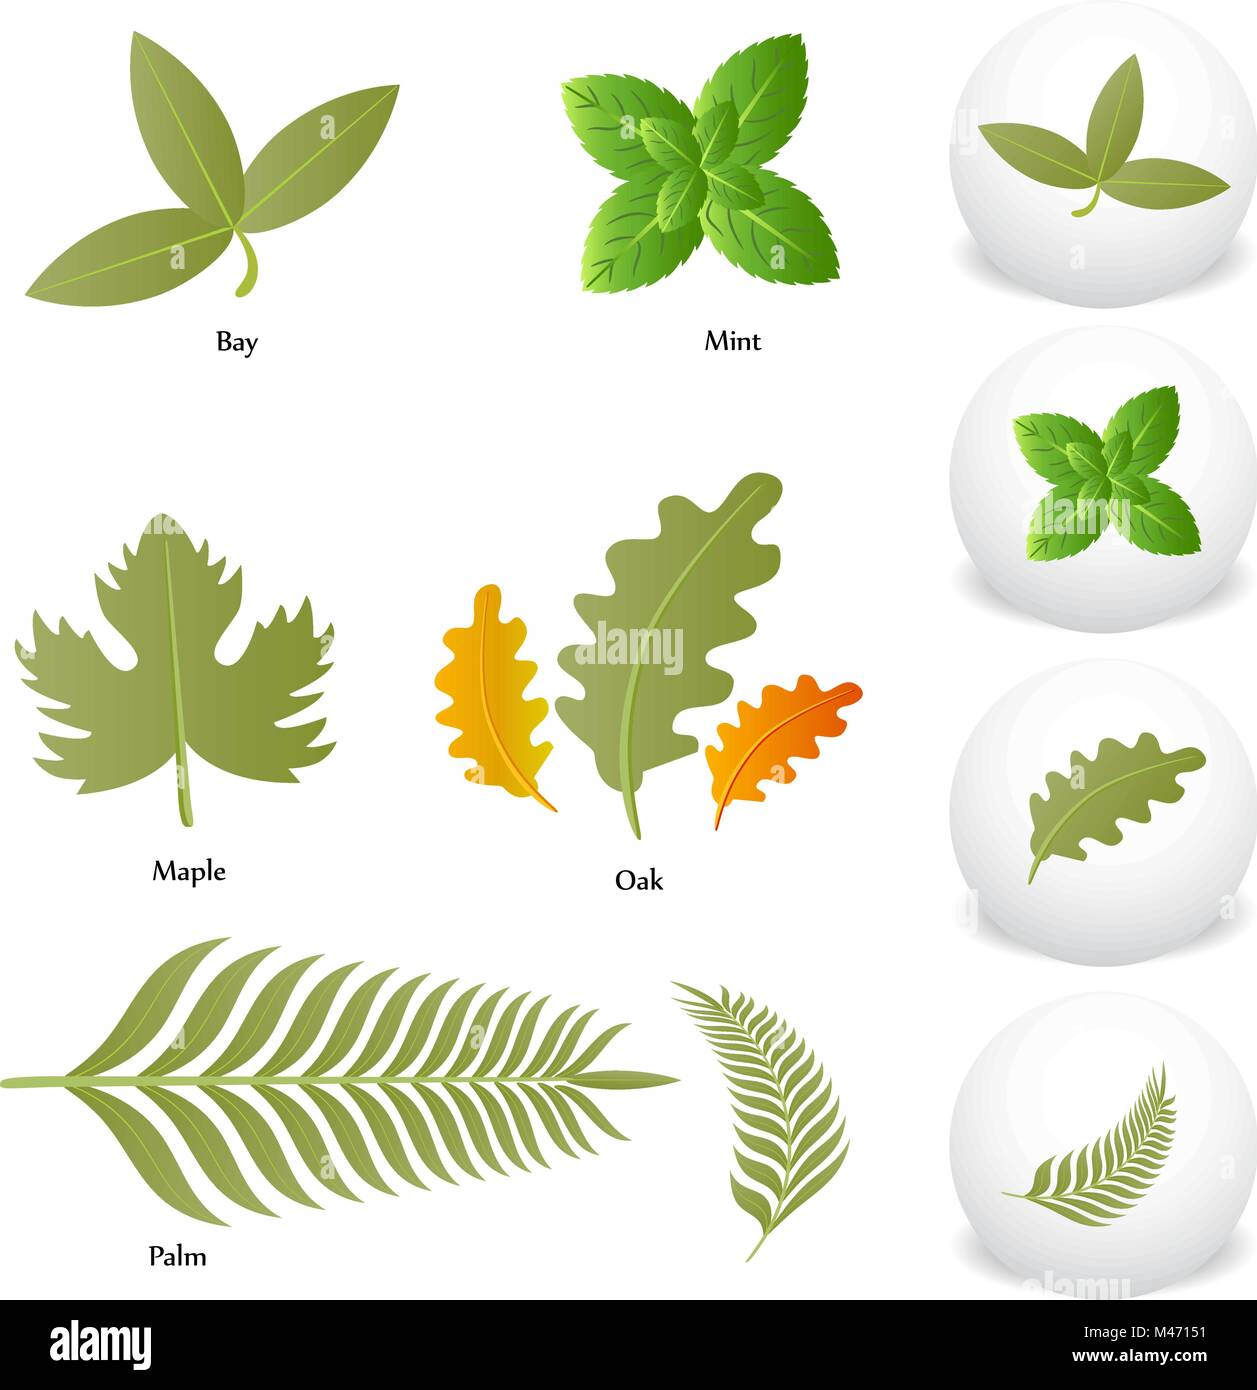 Ein Bild von Minze Eiche Ahorn Bay Palm Leaf Symbol Zeichnung eingestellt werden. Stock Vektor